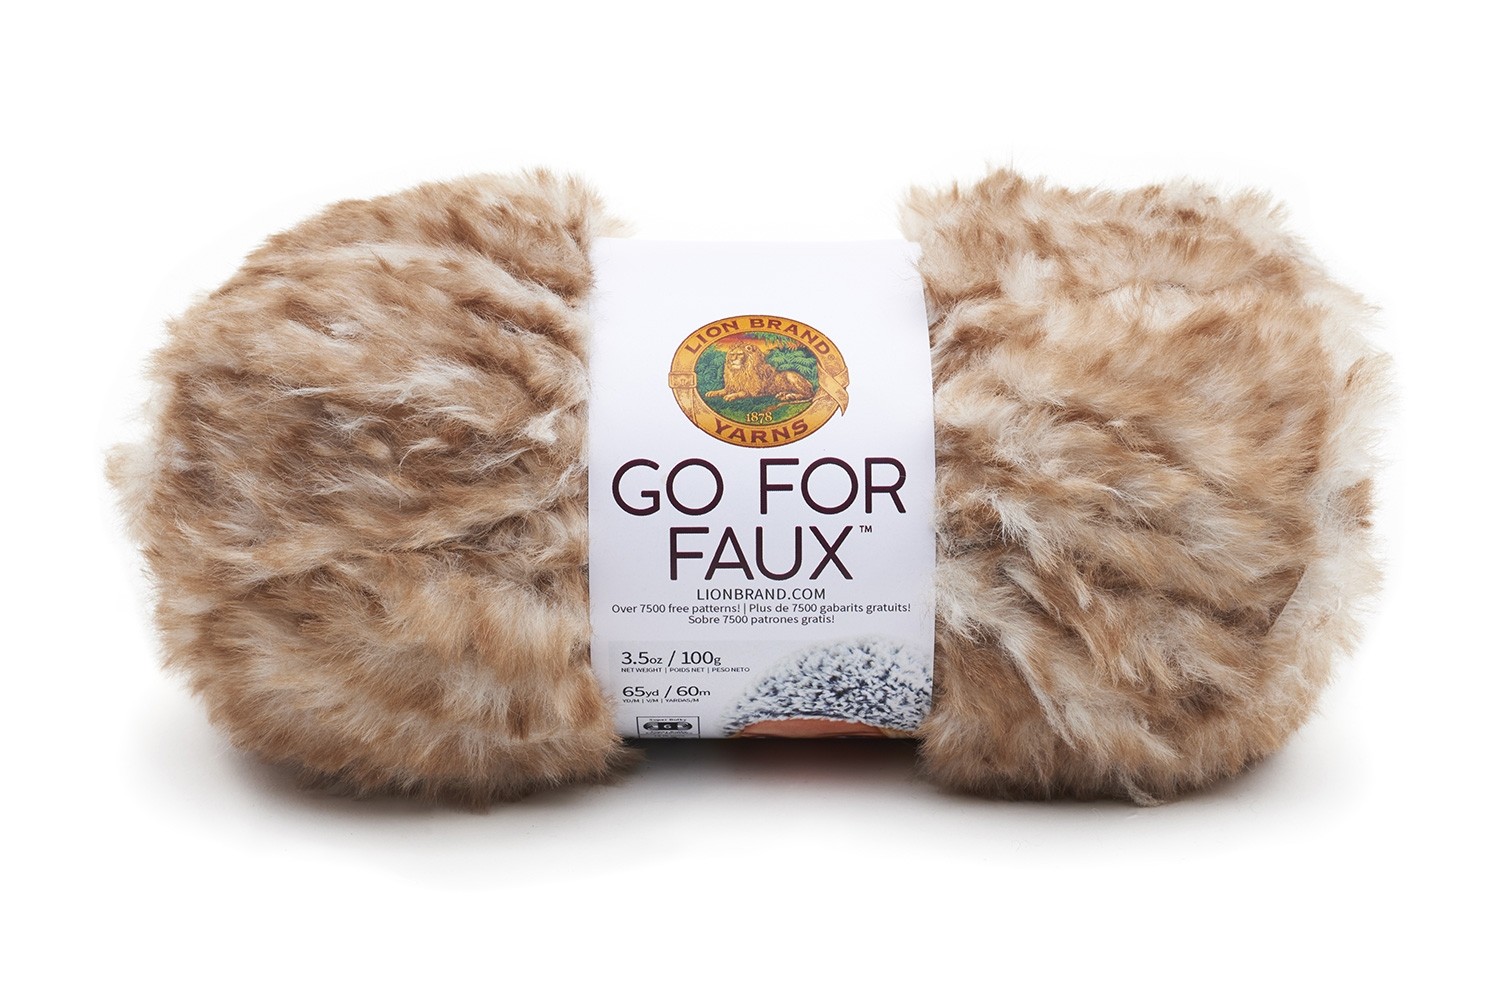 Go For Faux in Pomeranian